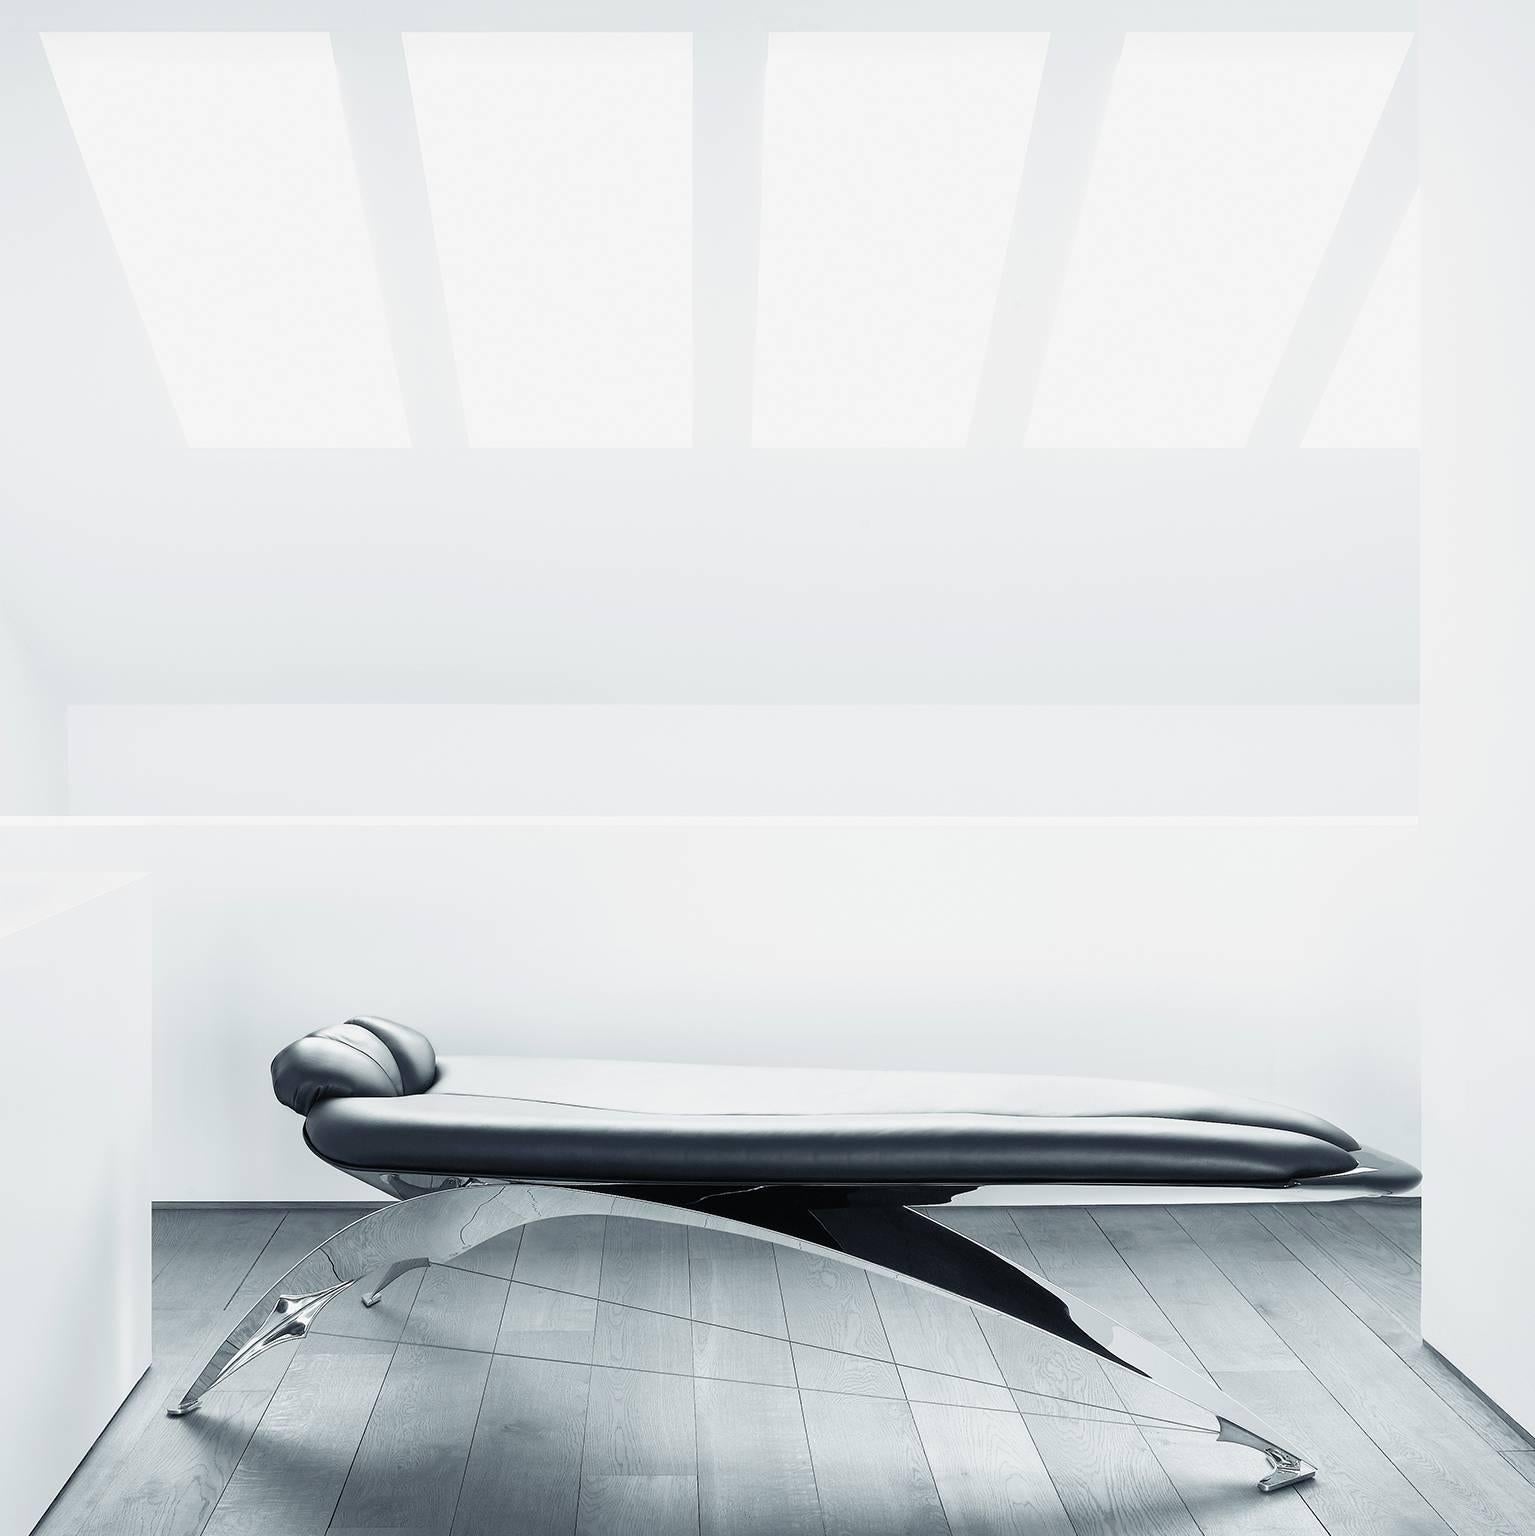 Die 1986 vom Architekten Santiago Calatrava entworfene Liege DS-150 präsentiert sich in einem einzigartig schönen und futuristischen Look, dessen scheinbar frei schwebende Form auf der Form des menschlichen Körpers basiert und sowohl im Aussehen als